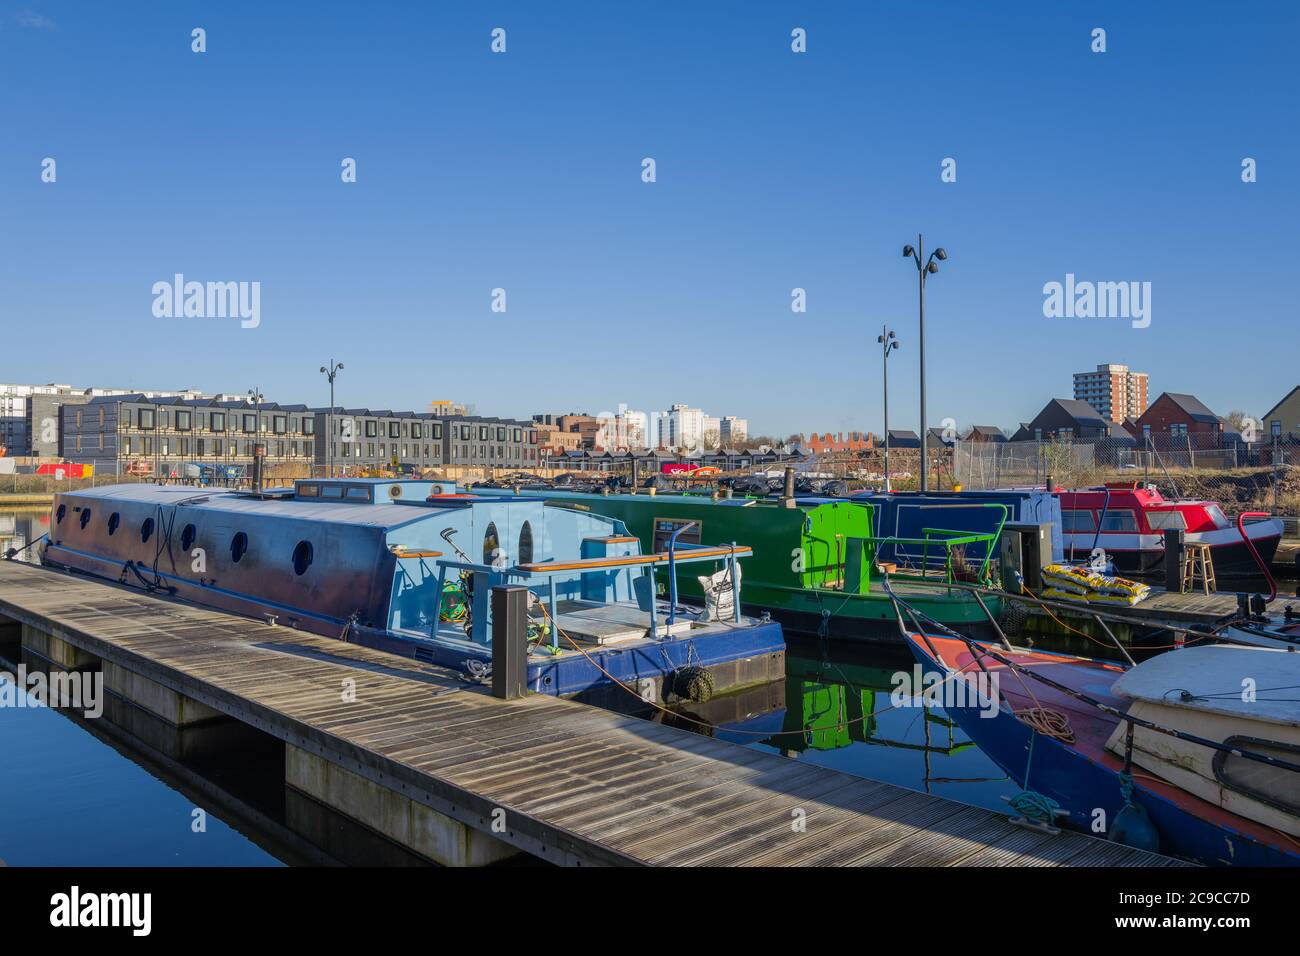 City Living - Kanalboote auf New Islington Marina. Foto-Features Entwicklung von Stadthäusern von Urban Splash. Alle rathausturm Blöcke am Horizont. Stockfoto